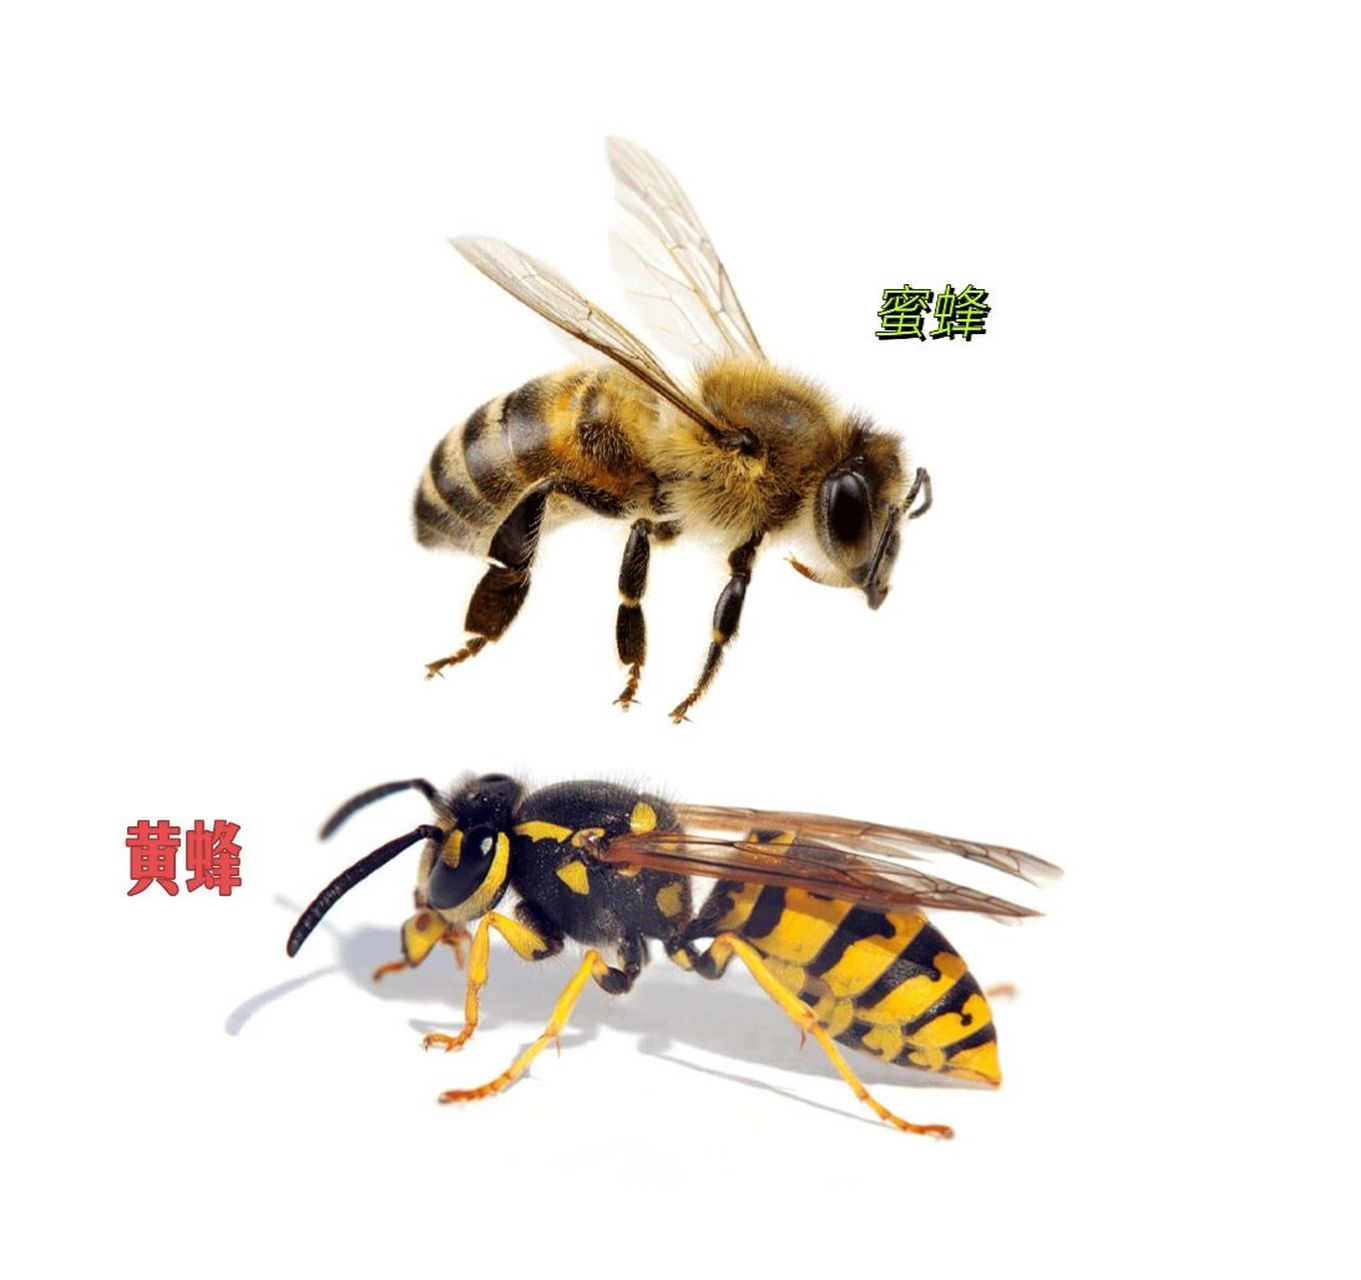 蜜蜂有几对翅膀图片